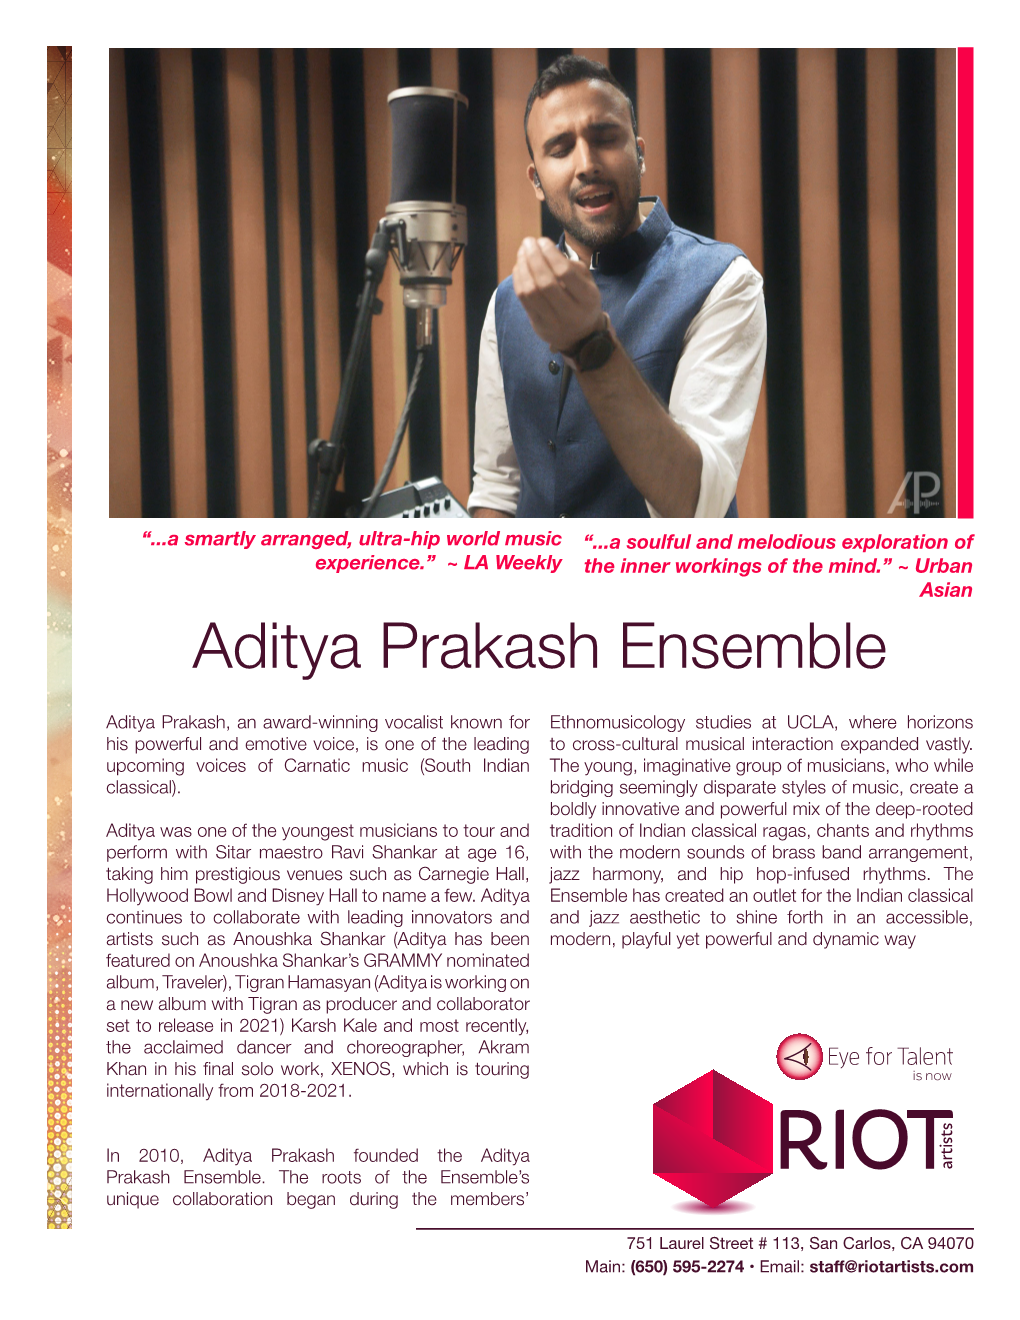 Aditya Prakash Ensemble